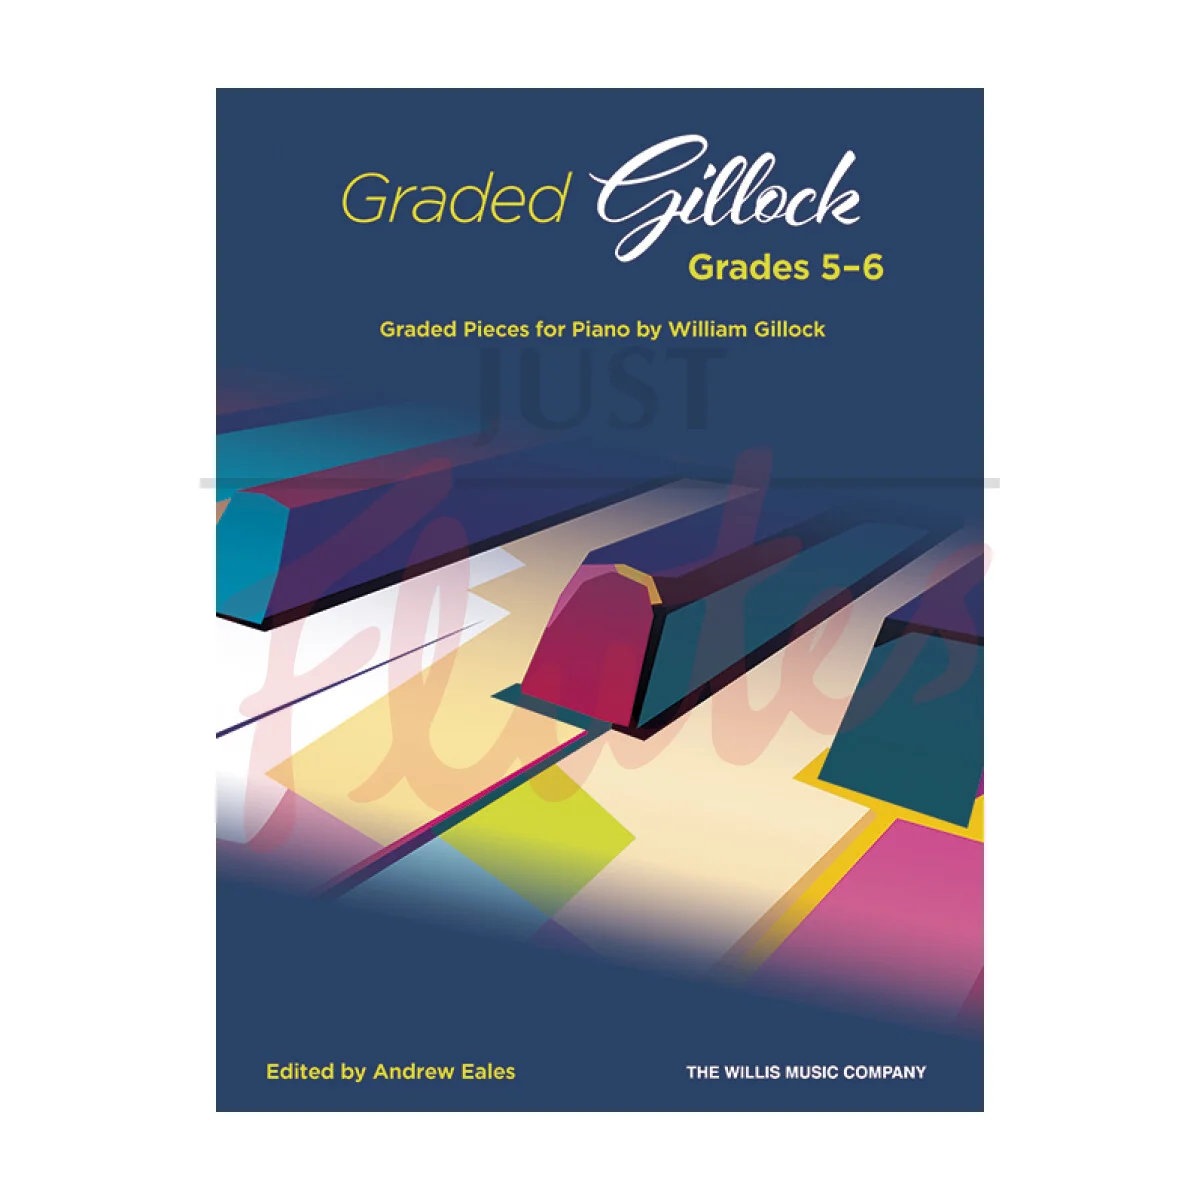 Graded Gillock, Grades 5-6 for Piano